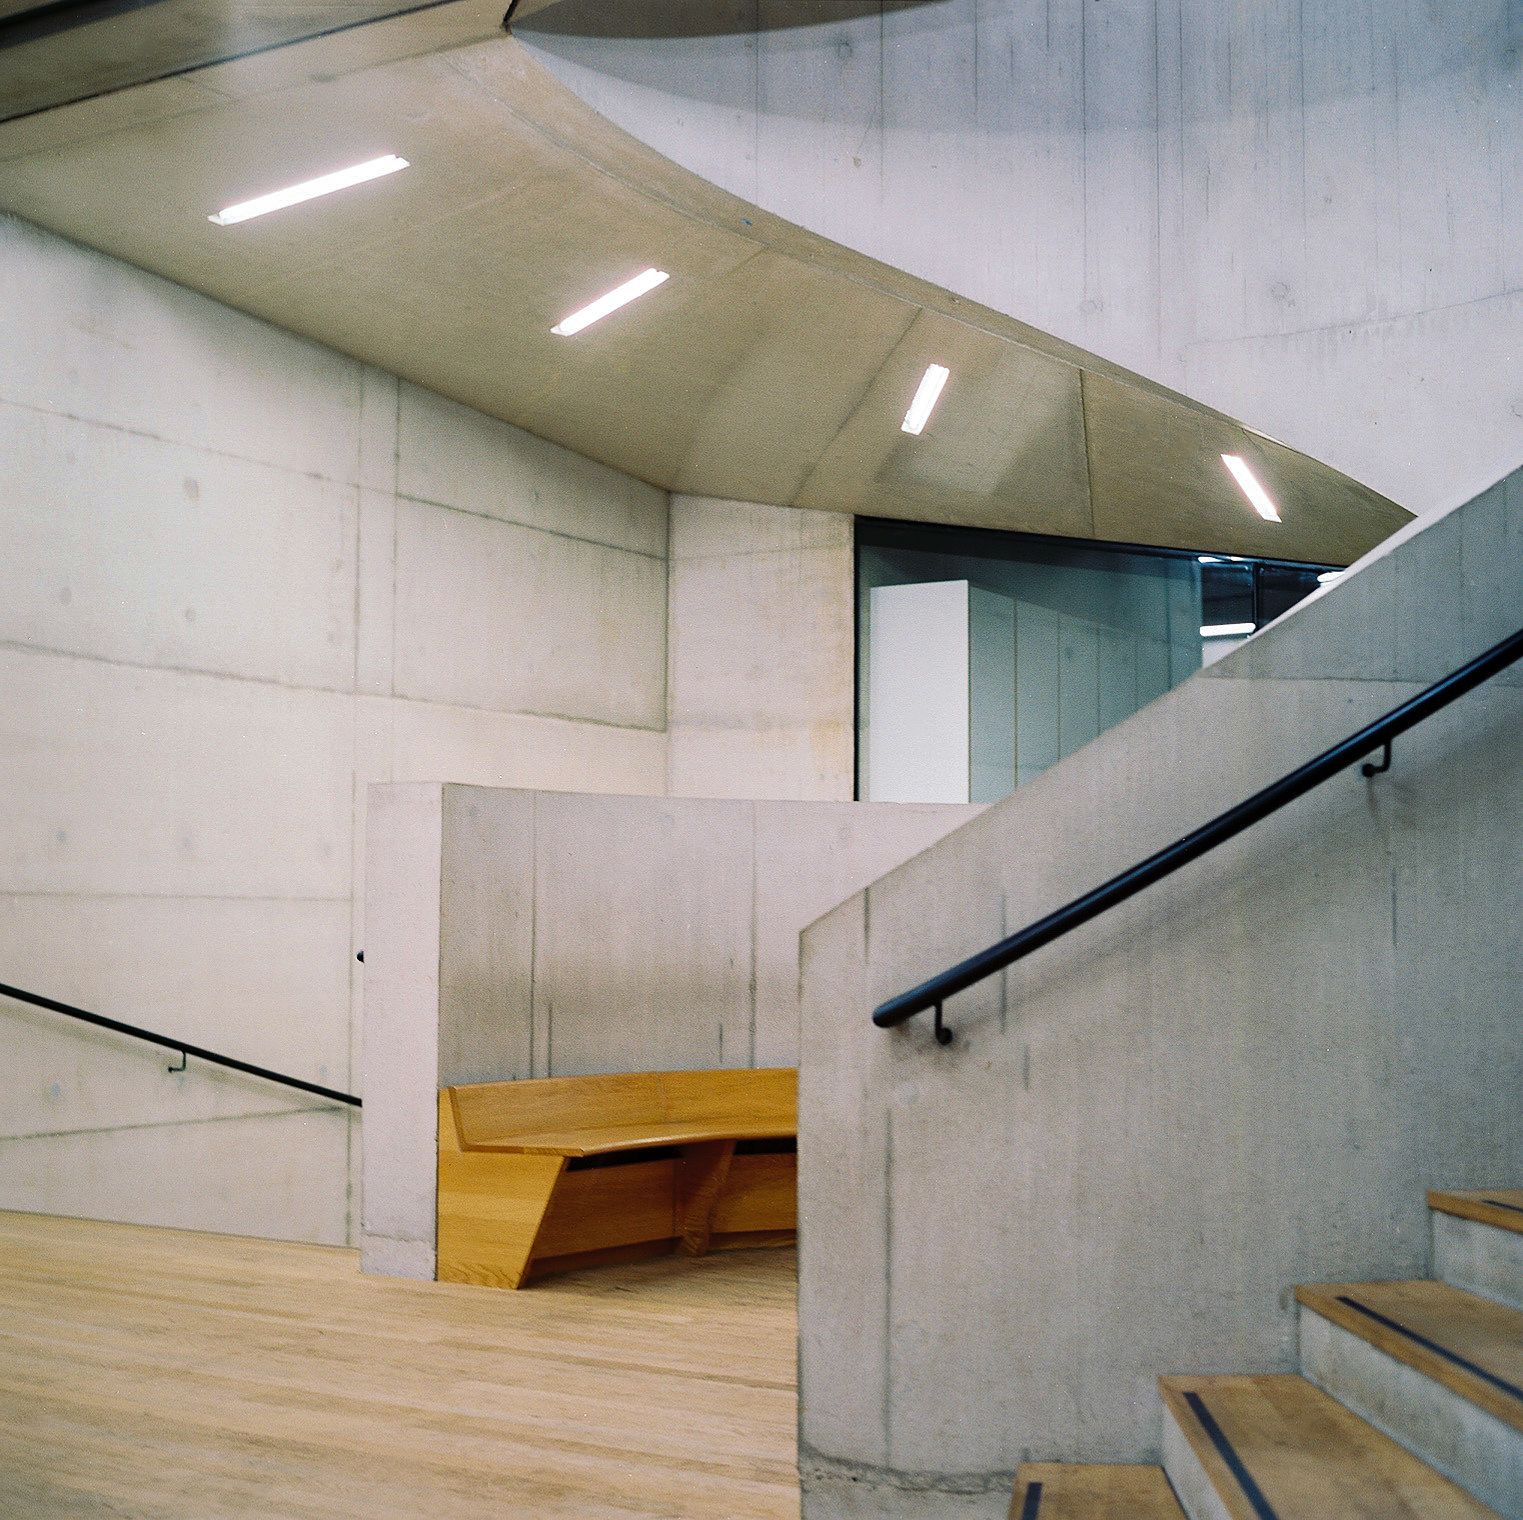 HERZOG & DE MEURON. Tate Modern extension . London afasia (8) – a f a s i a